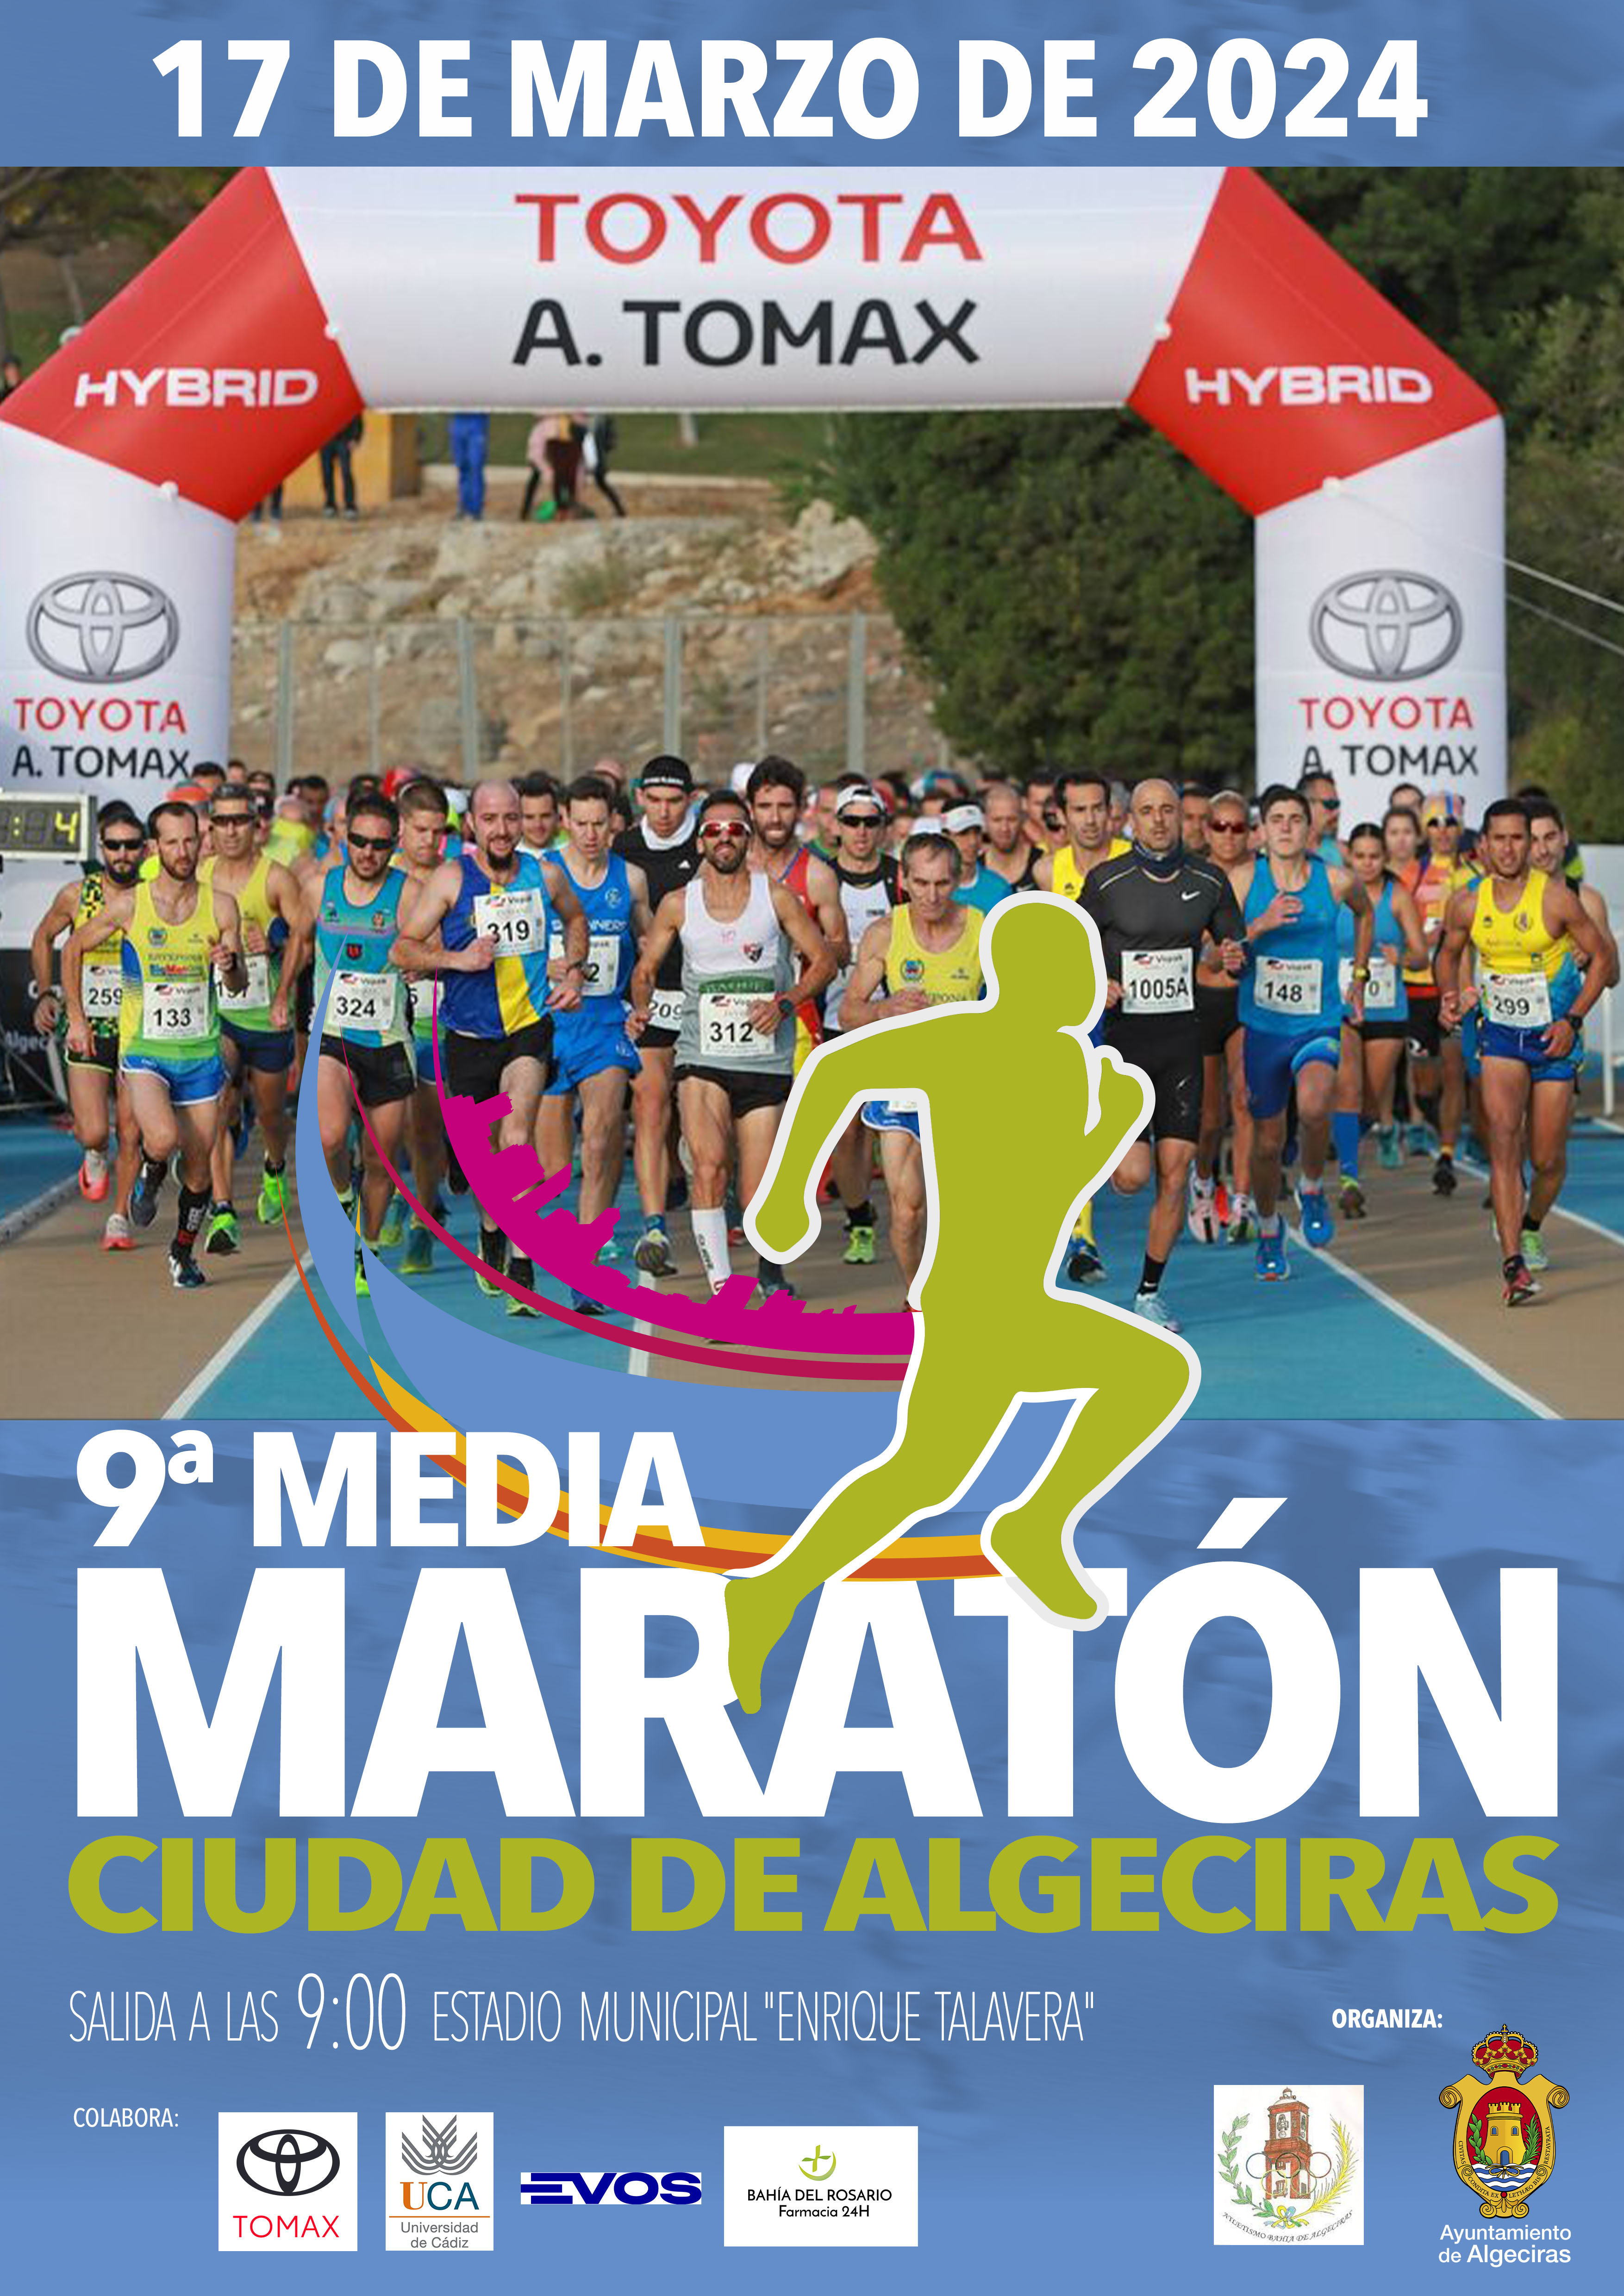 9-Media-Maraton-Ciudad-de-Algeciras